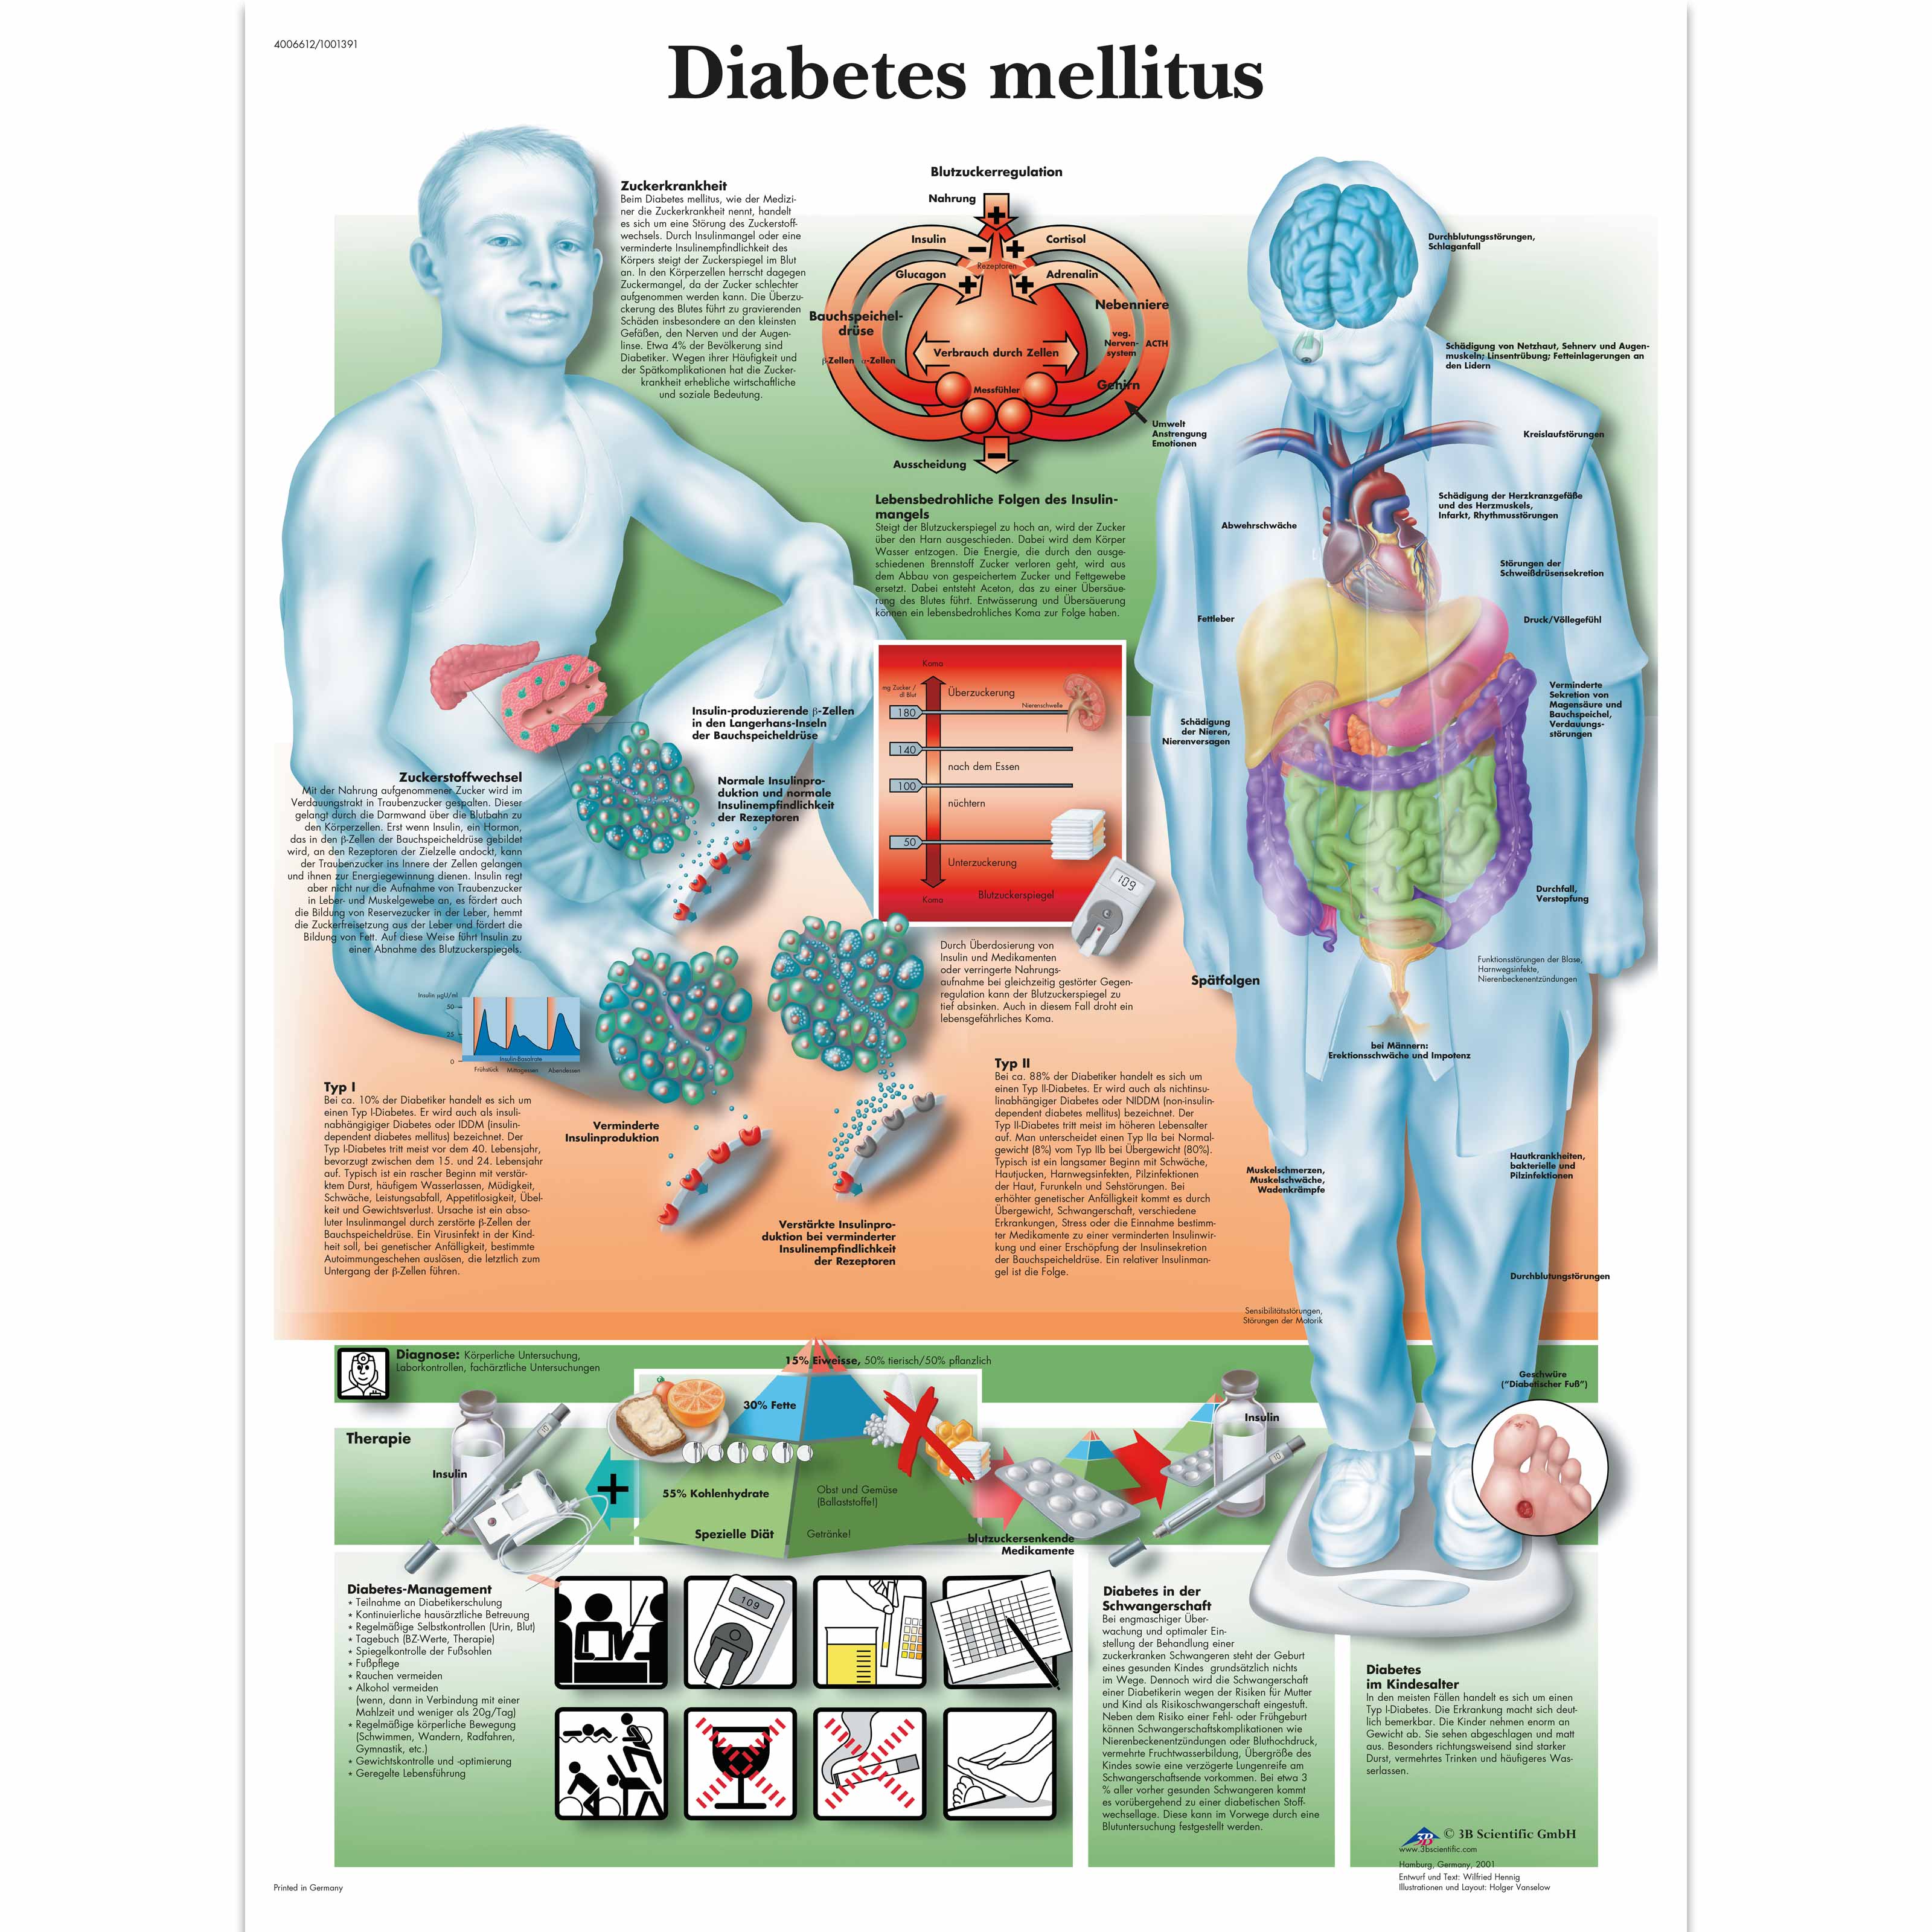 Diabetes Types Chart